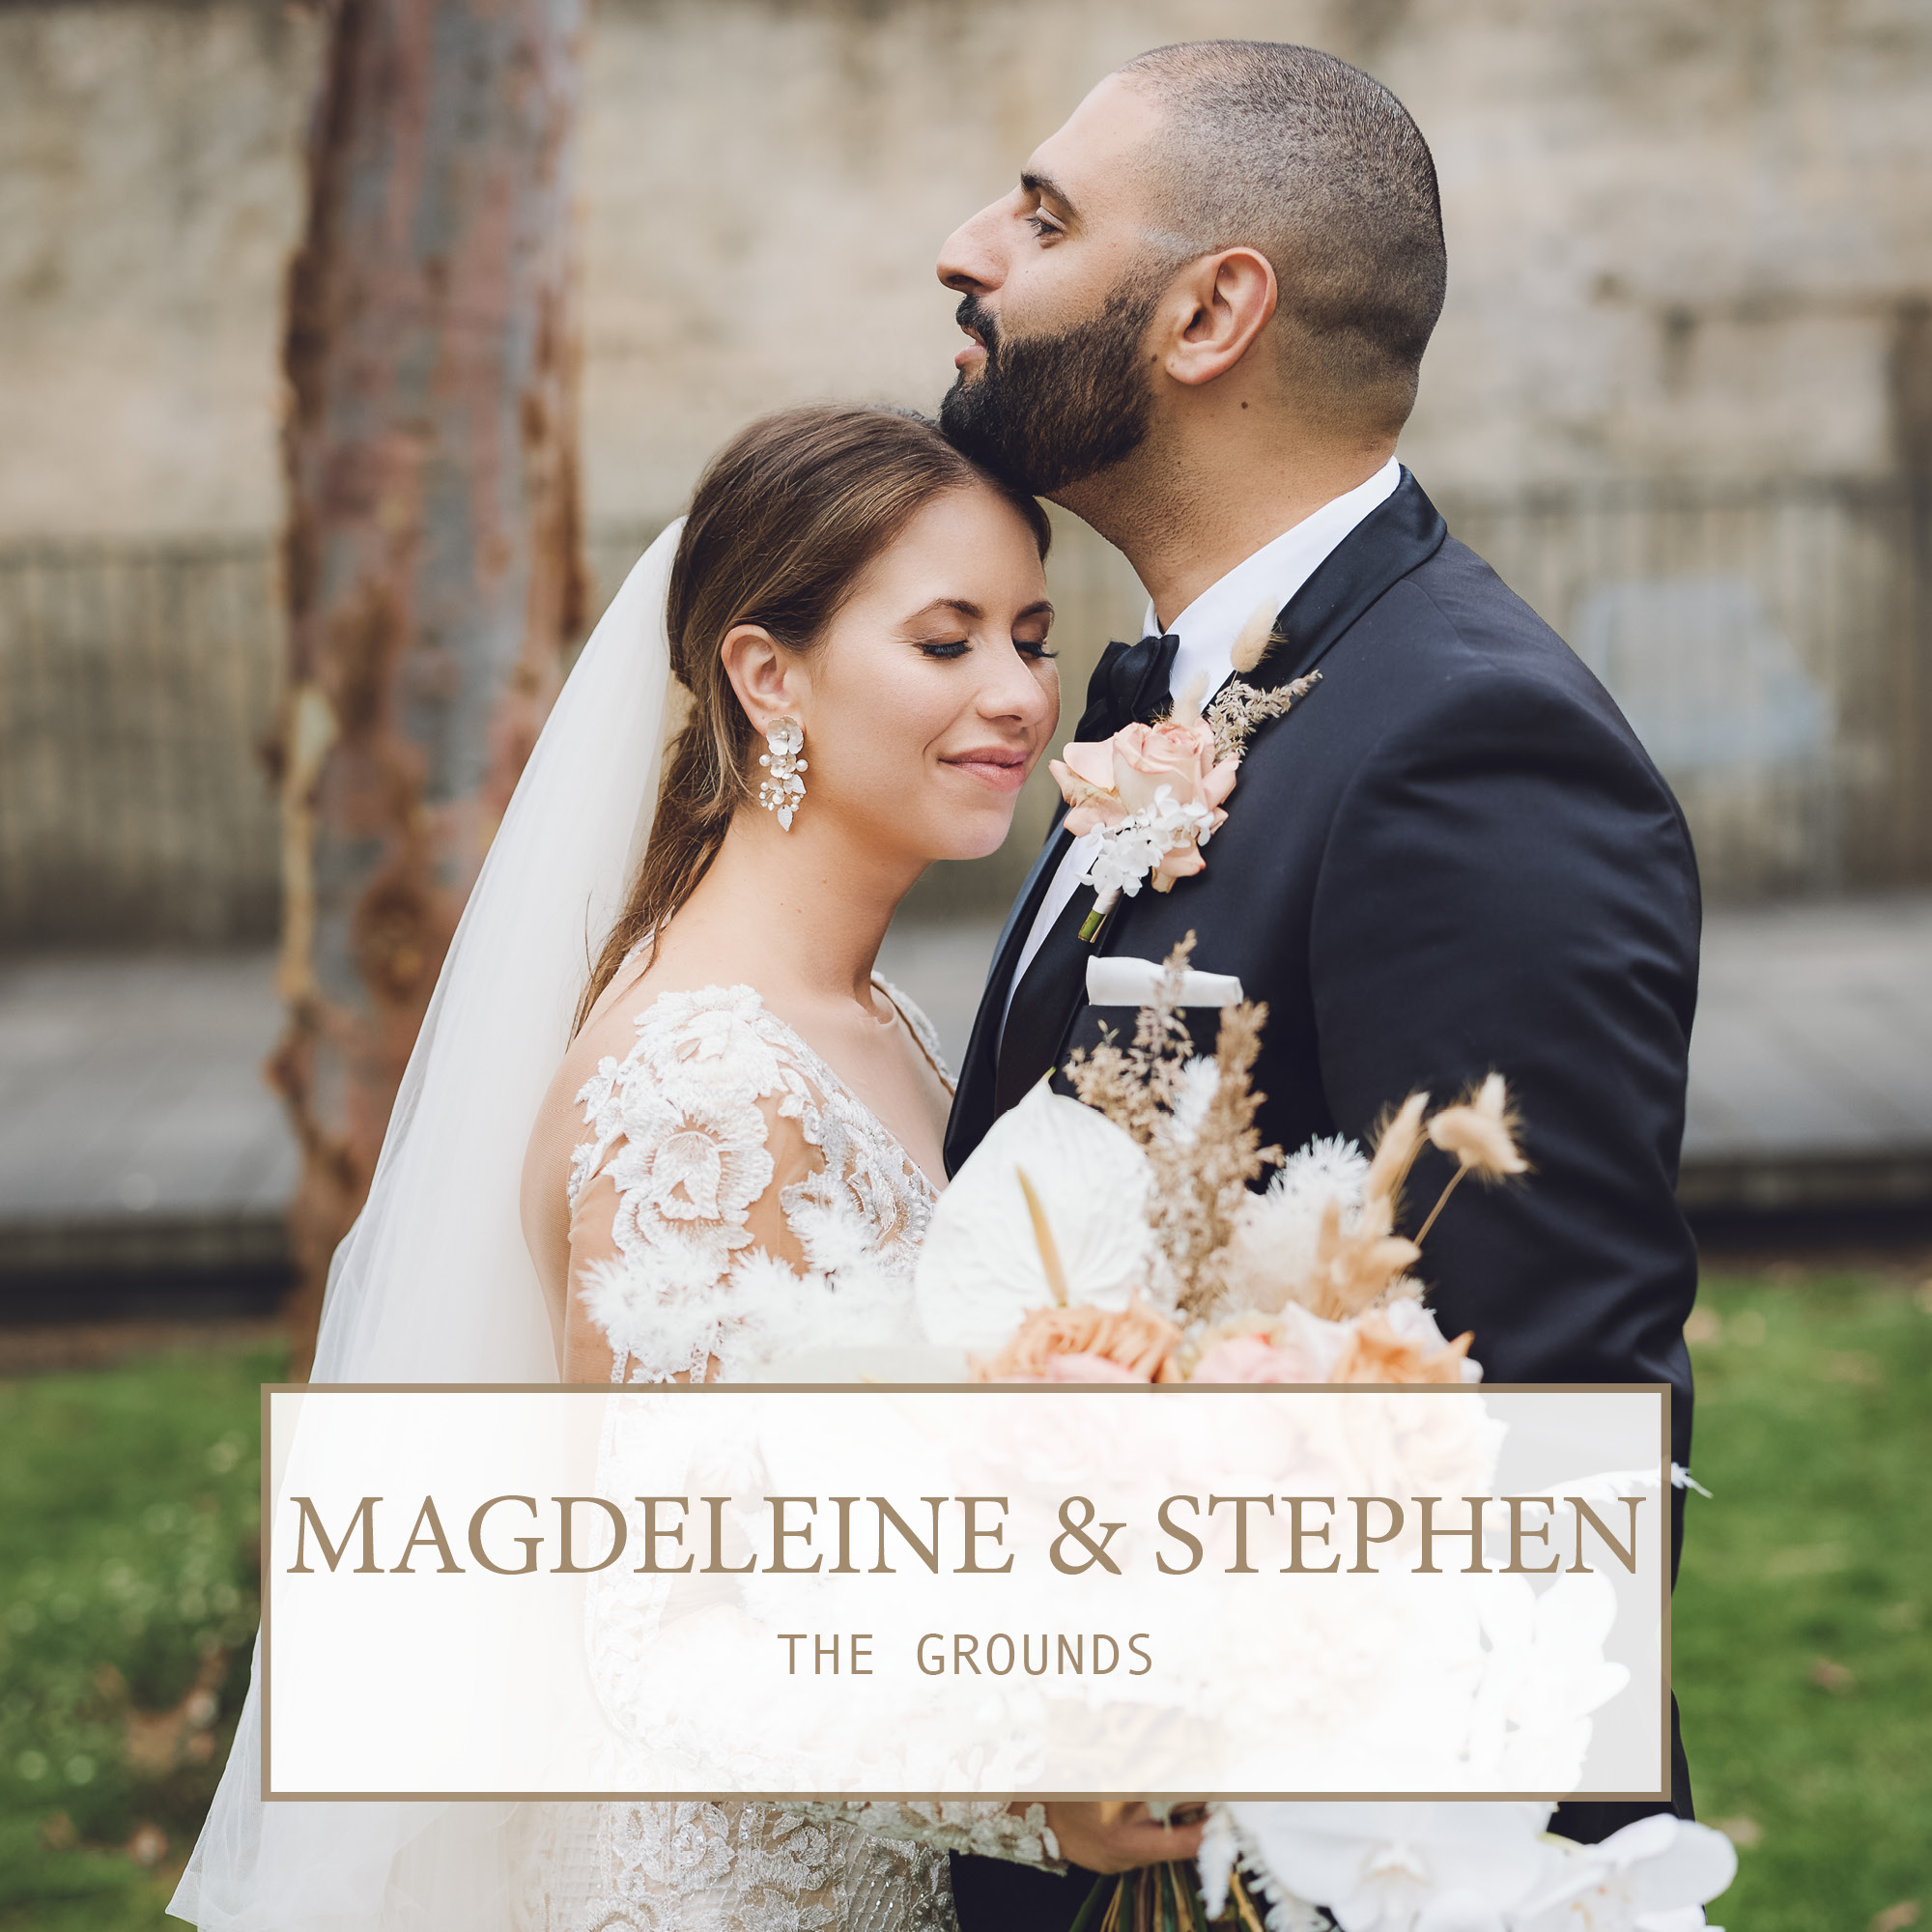 The Grounds Wedding: Magdeleine & Stephen 1